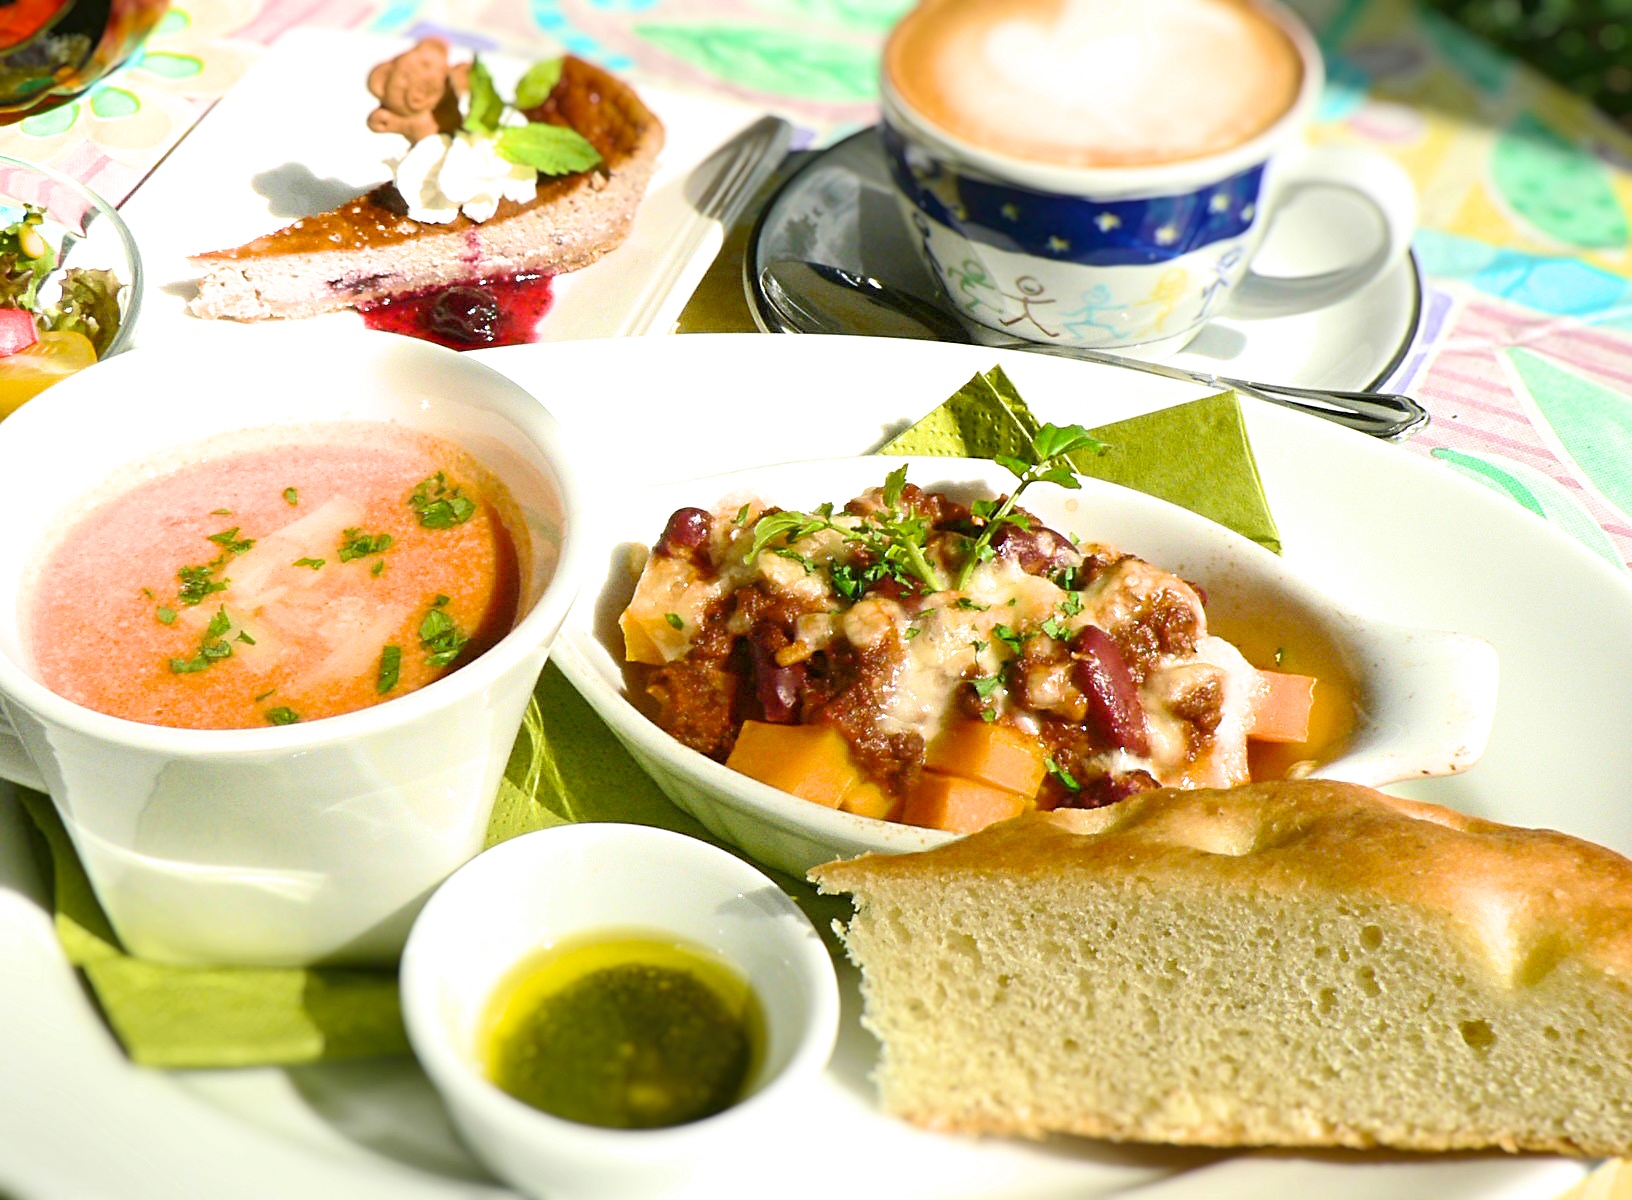 烘焙料理及湯品、本店特製福卡恰義大立面包午餐套餐很受歡迎